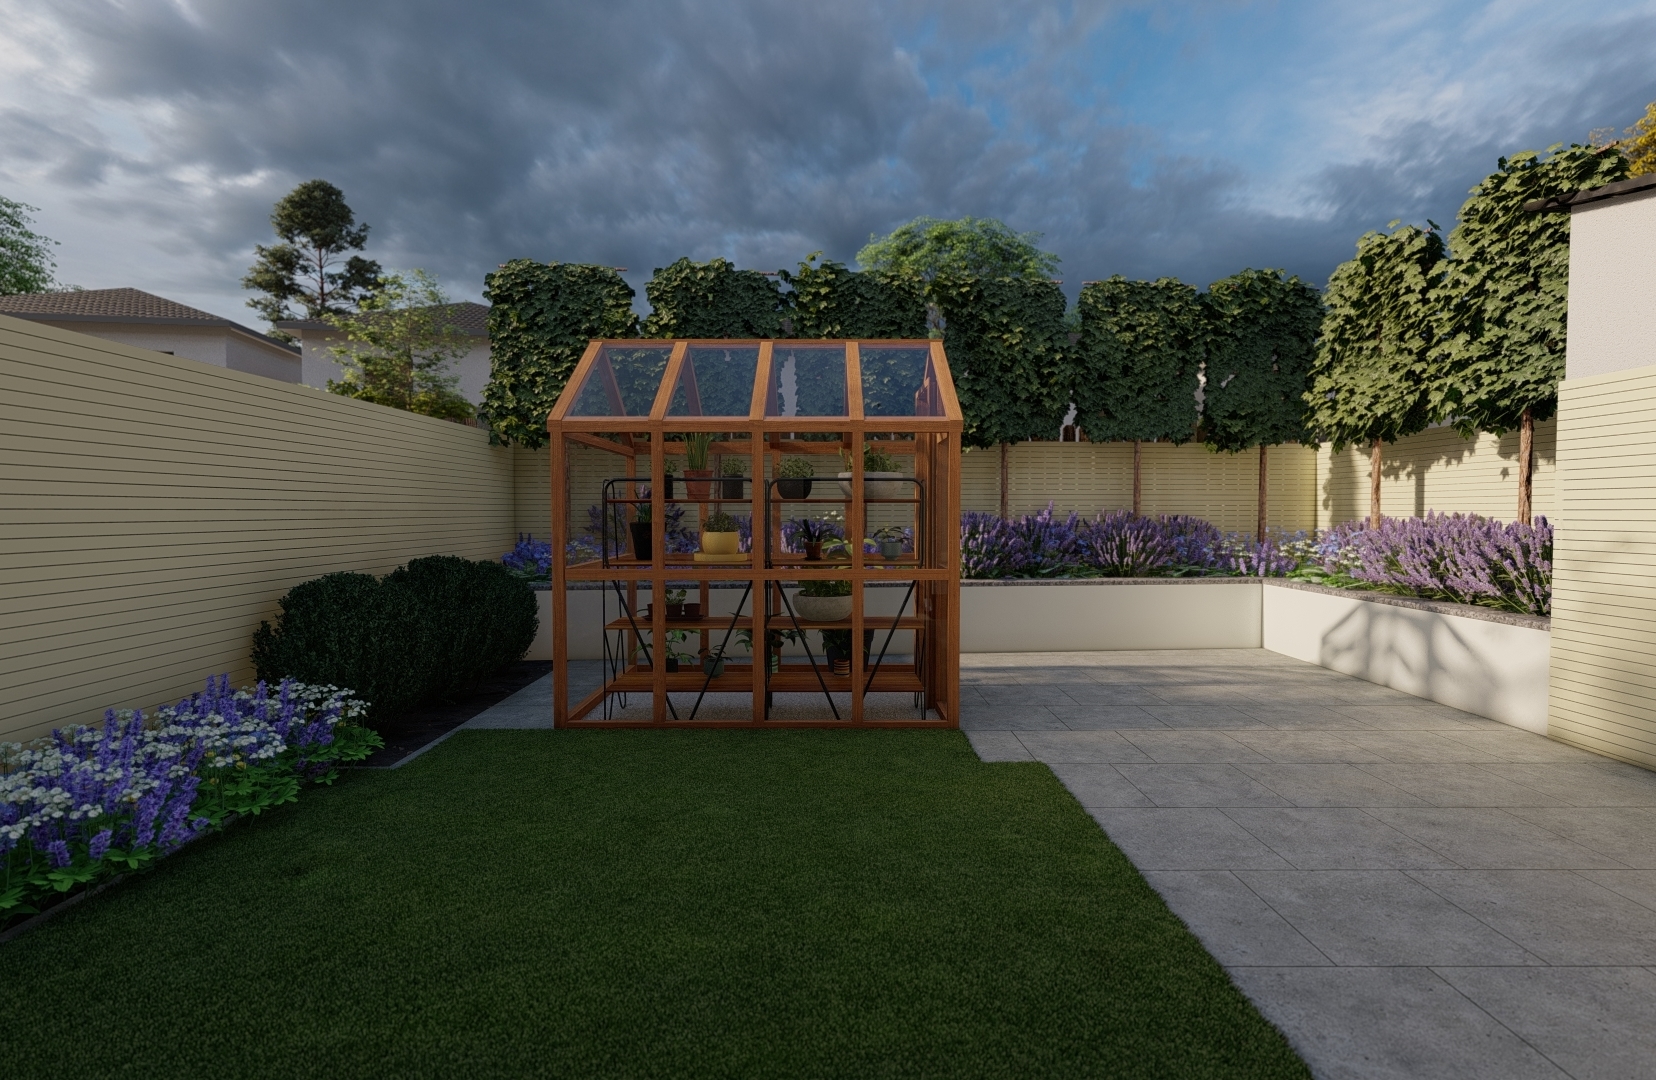 Design Visuals for a Family Garden in Knocklyon, Dublin 16